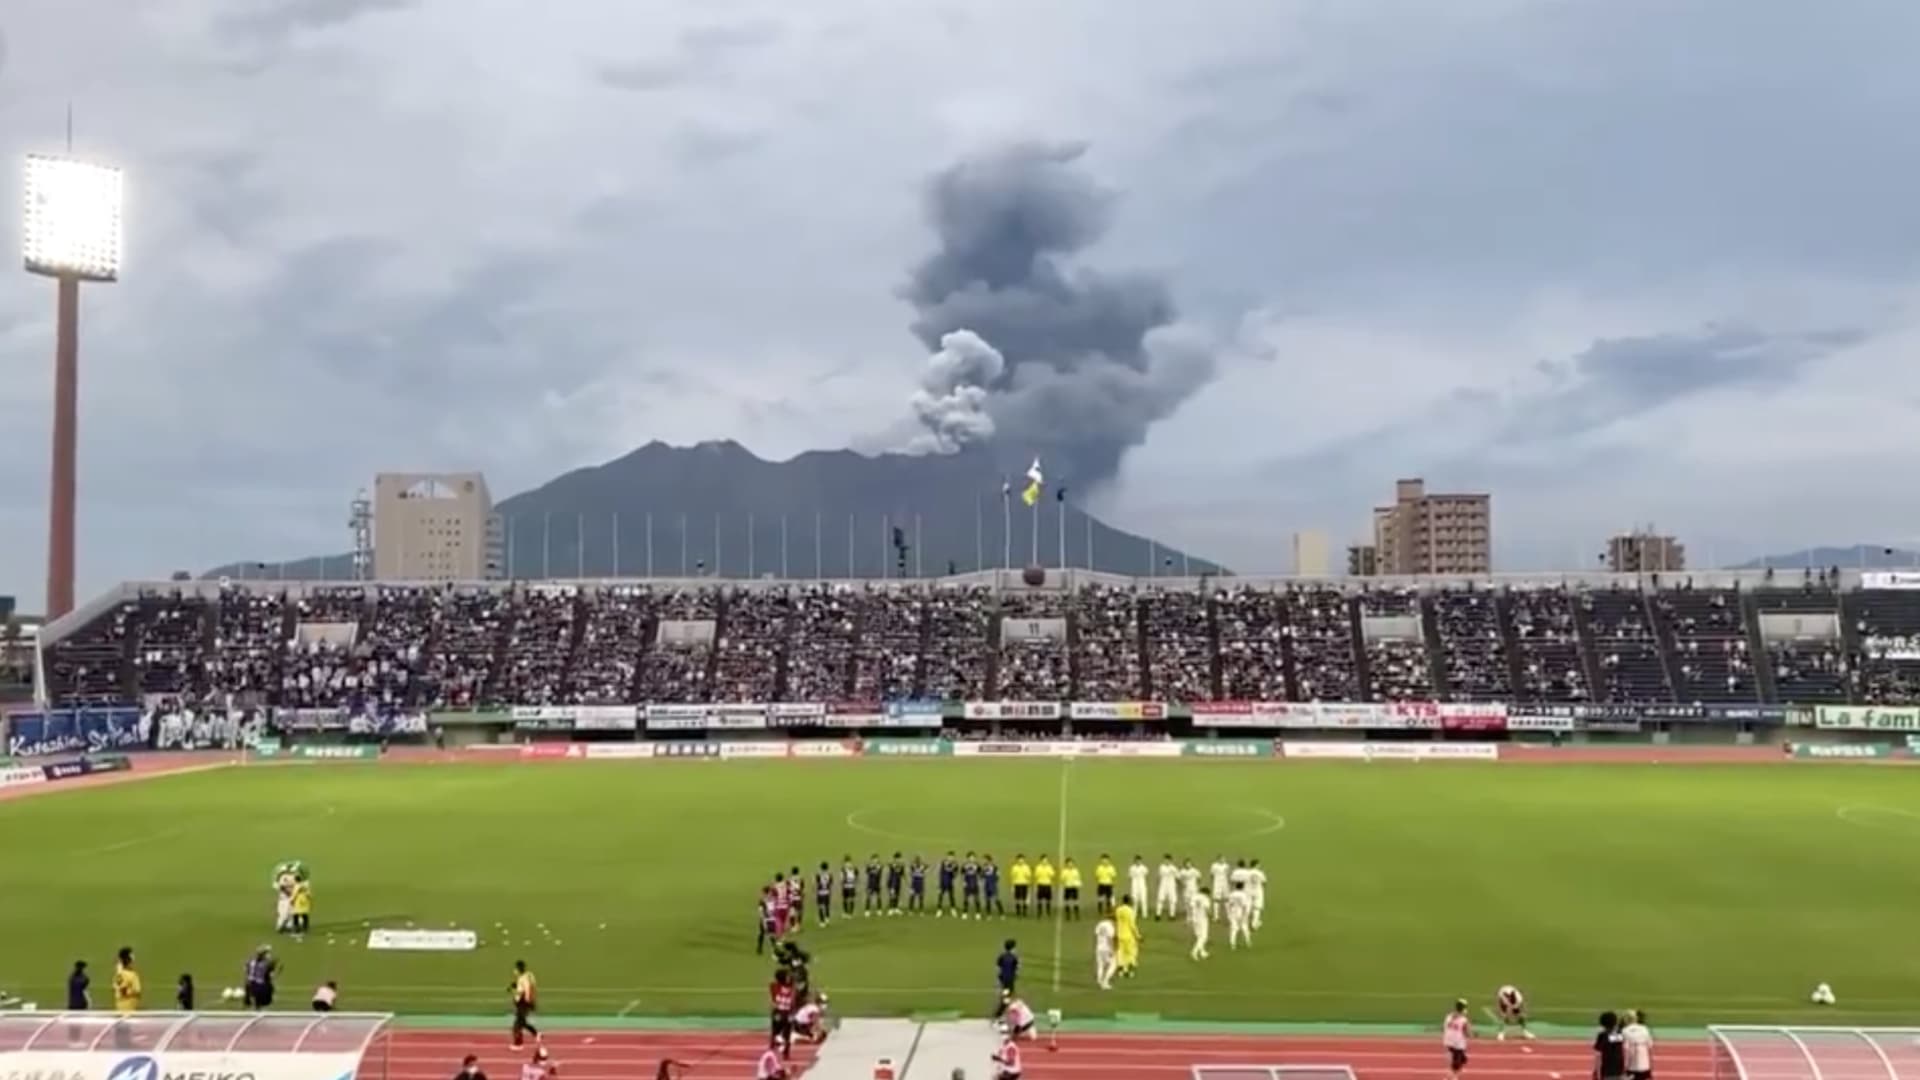 كاميرا ترصد لحظة انفجار بركان أثناء مباراة كرة قدم في اليابان